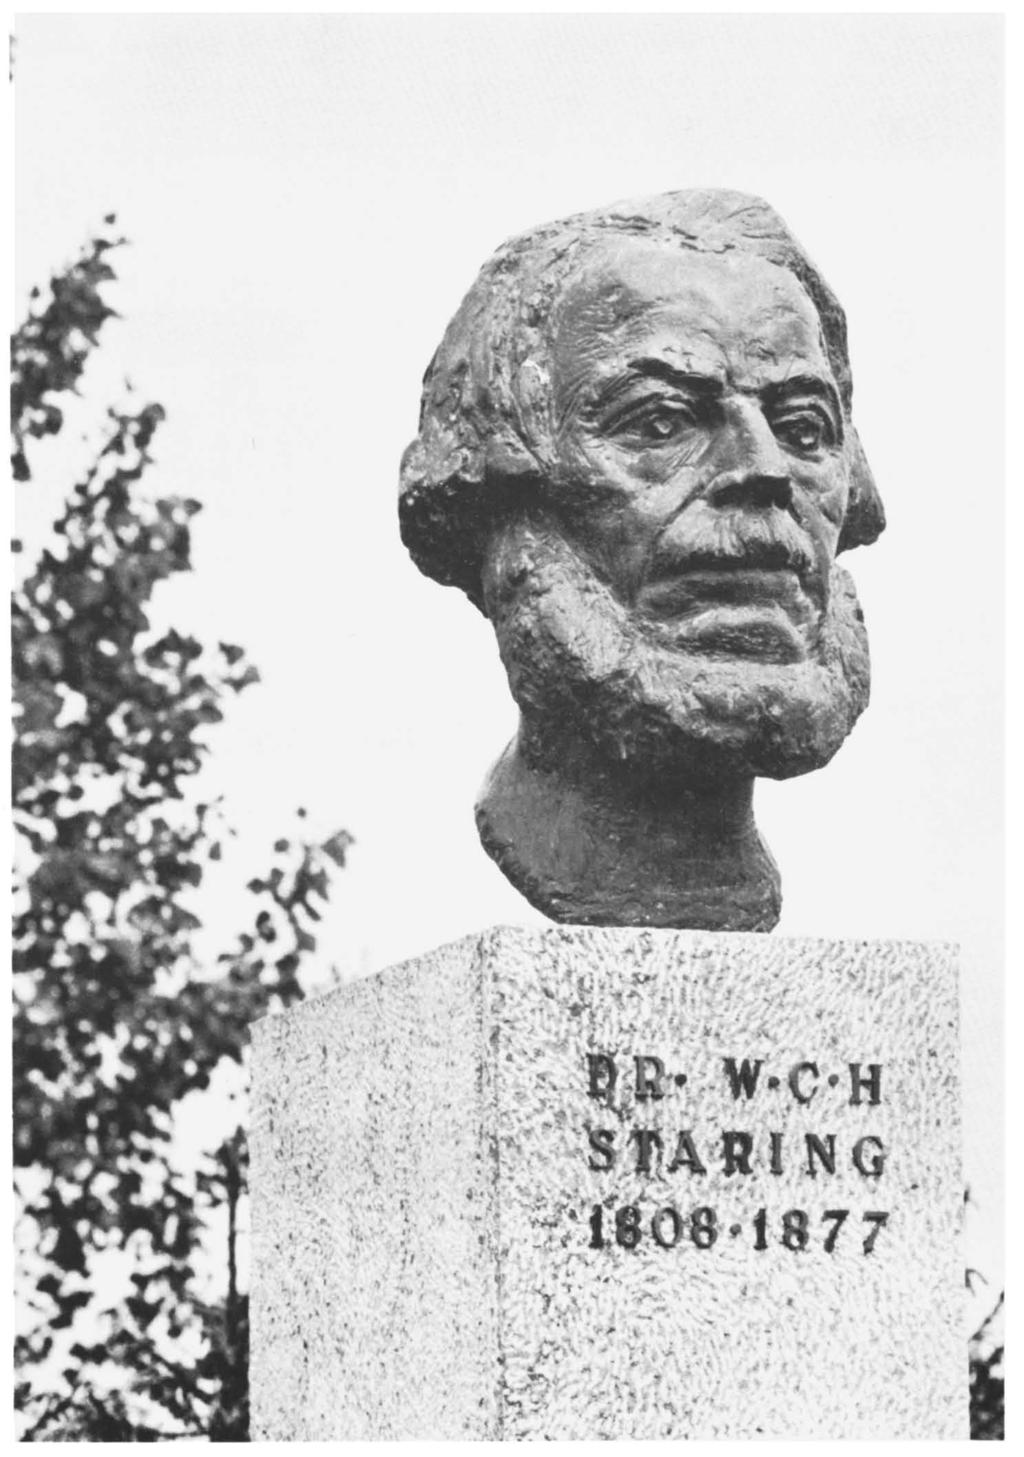 Het borstbeeld van Dr. W. G. H.